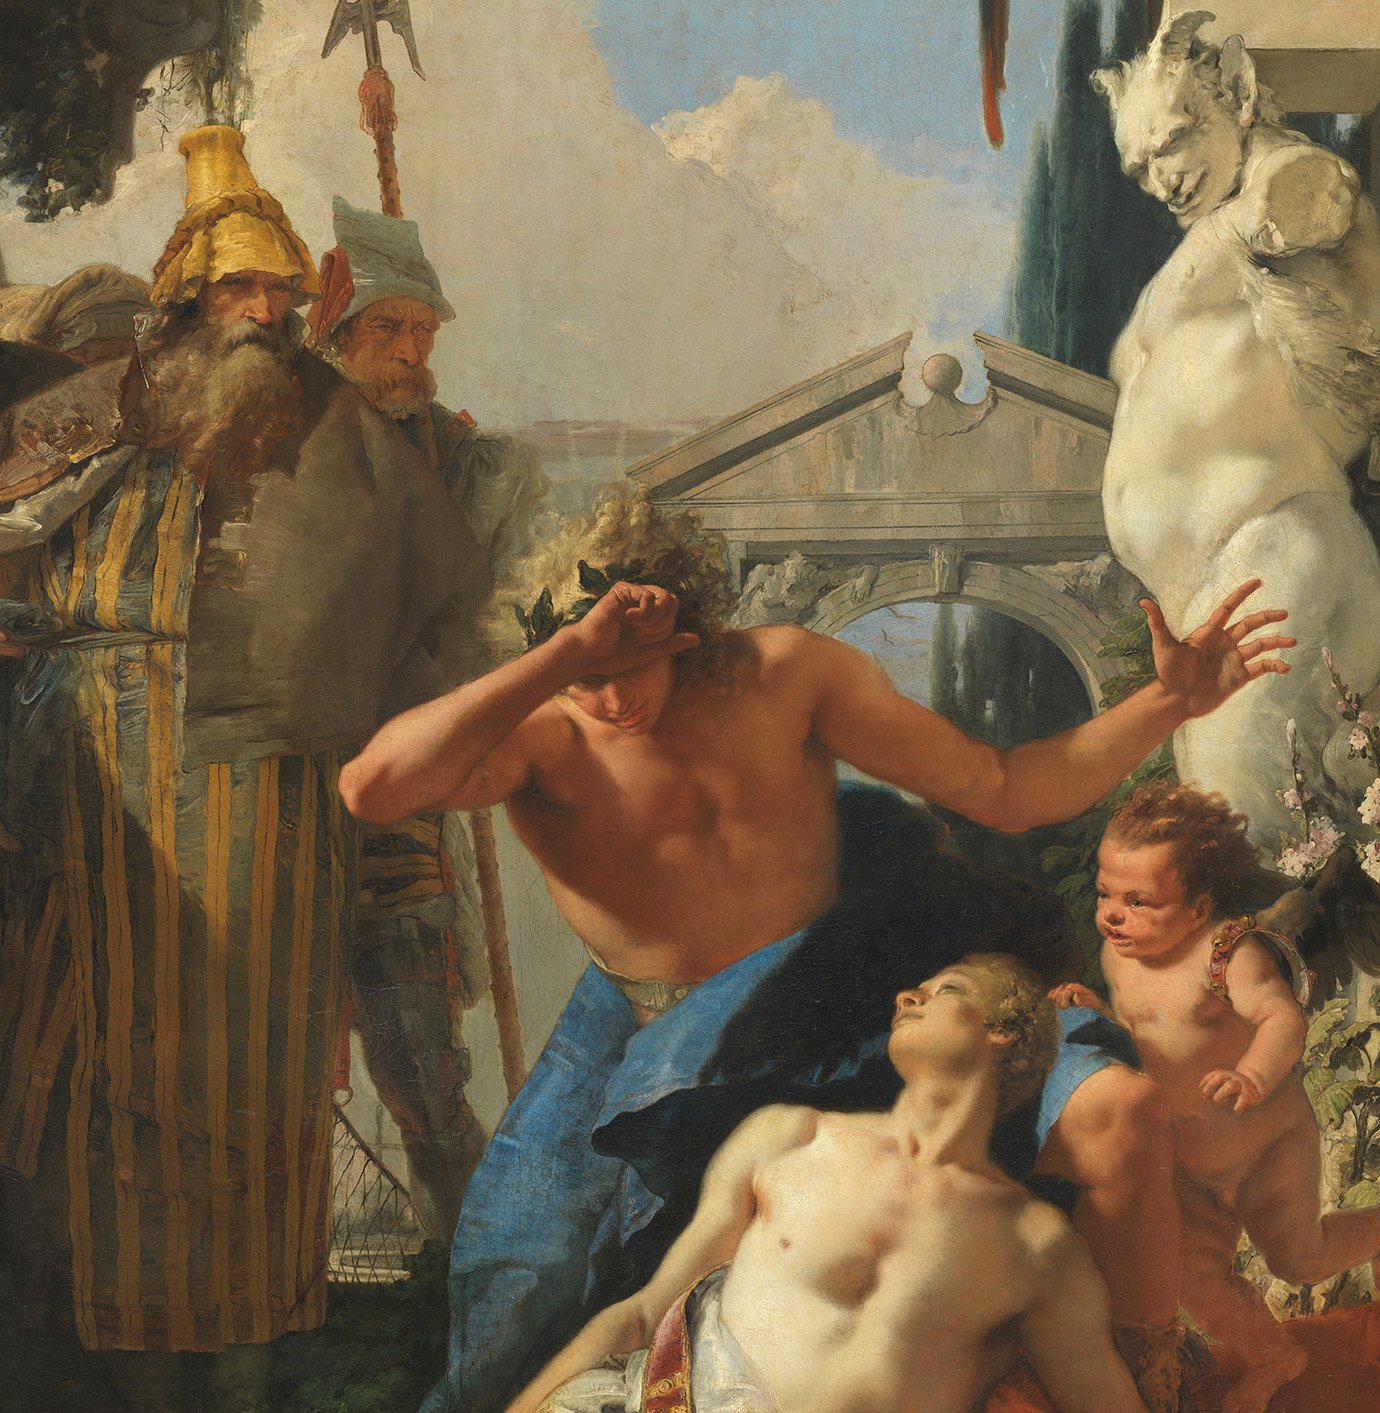 Detalle de la obra "La muerte de Jacinto" de Giambattista Tiepolo, antes de su restauración